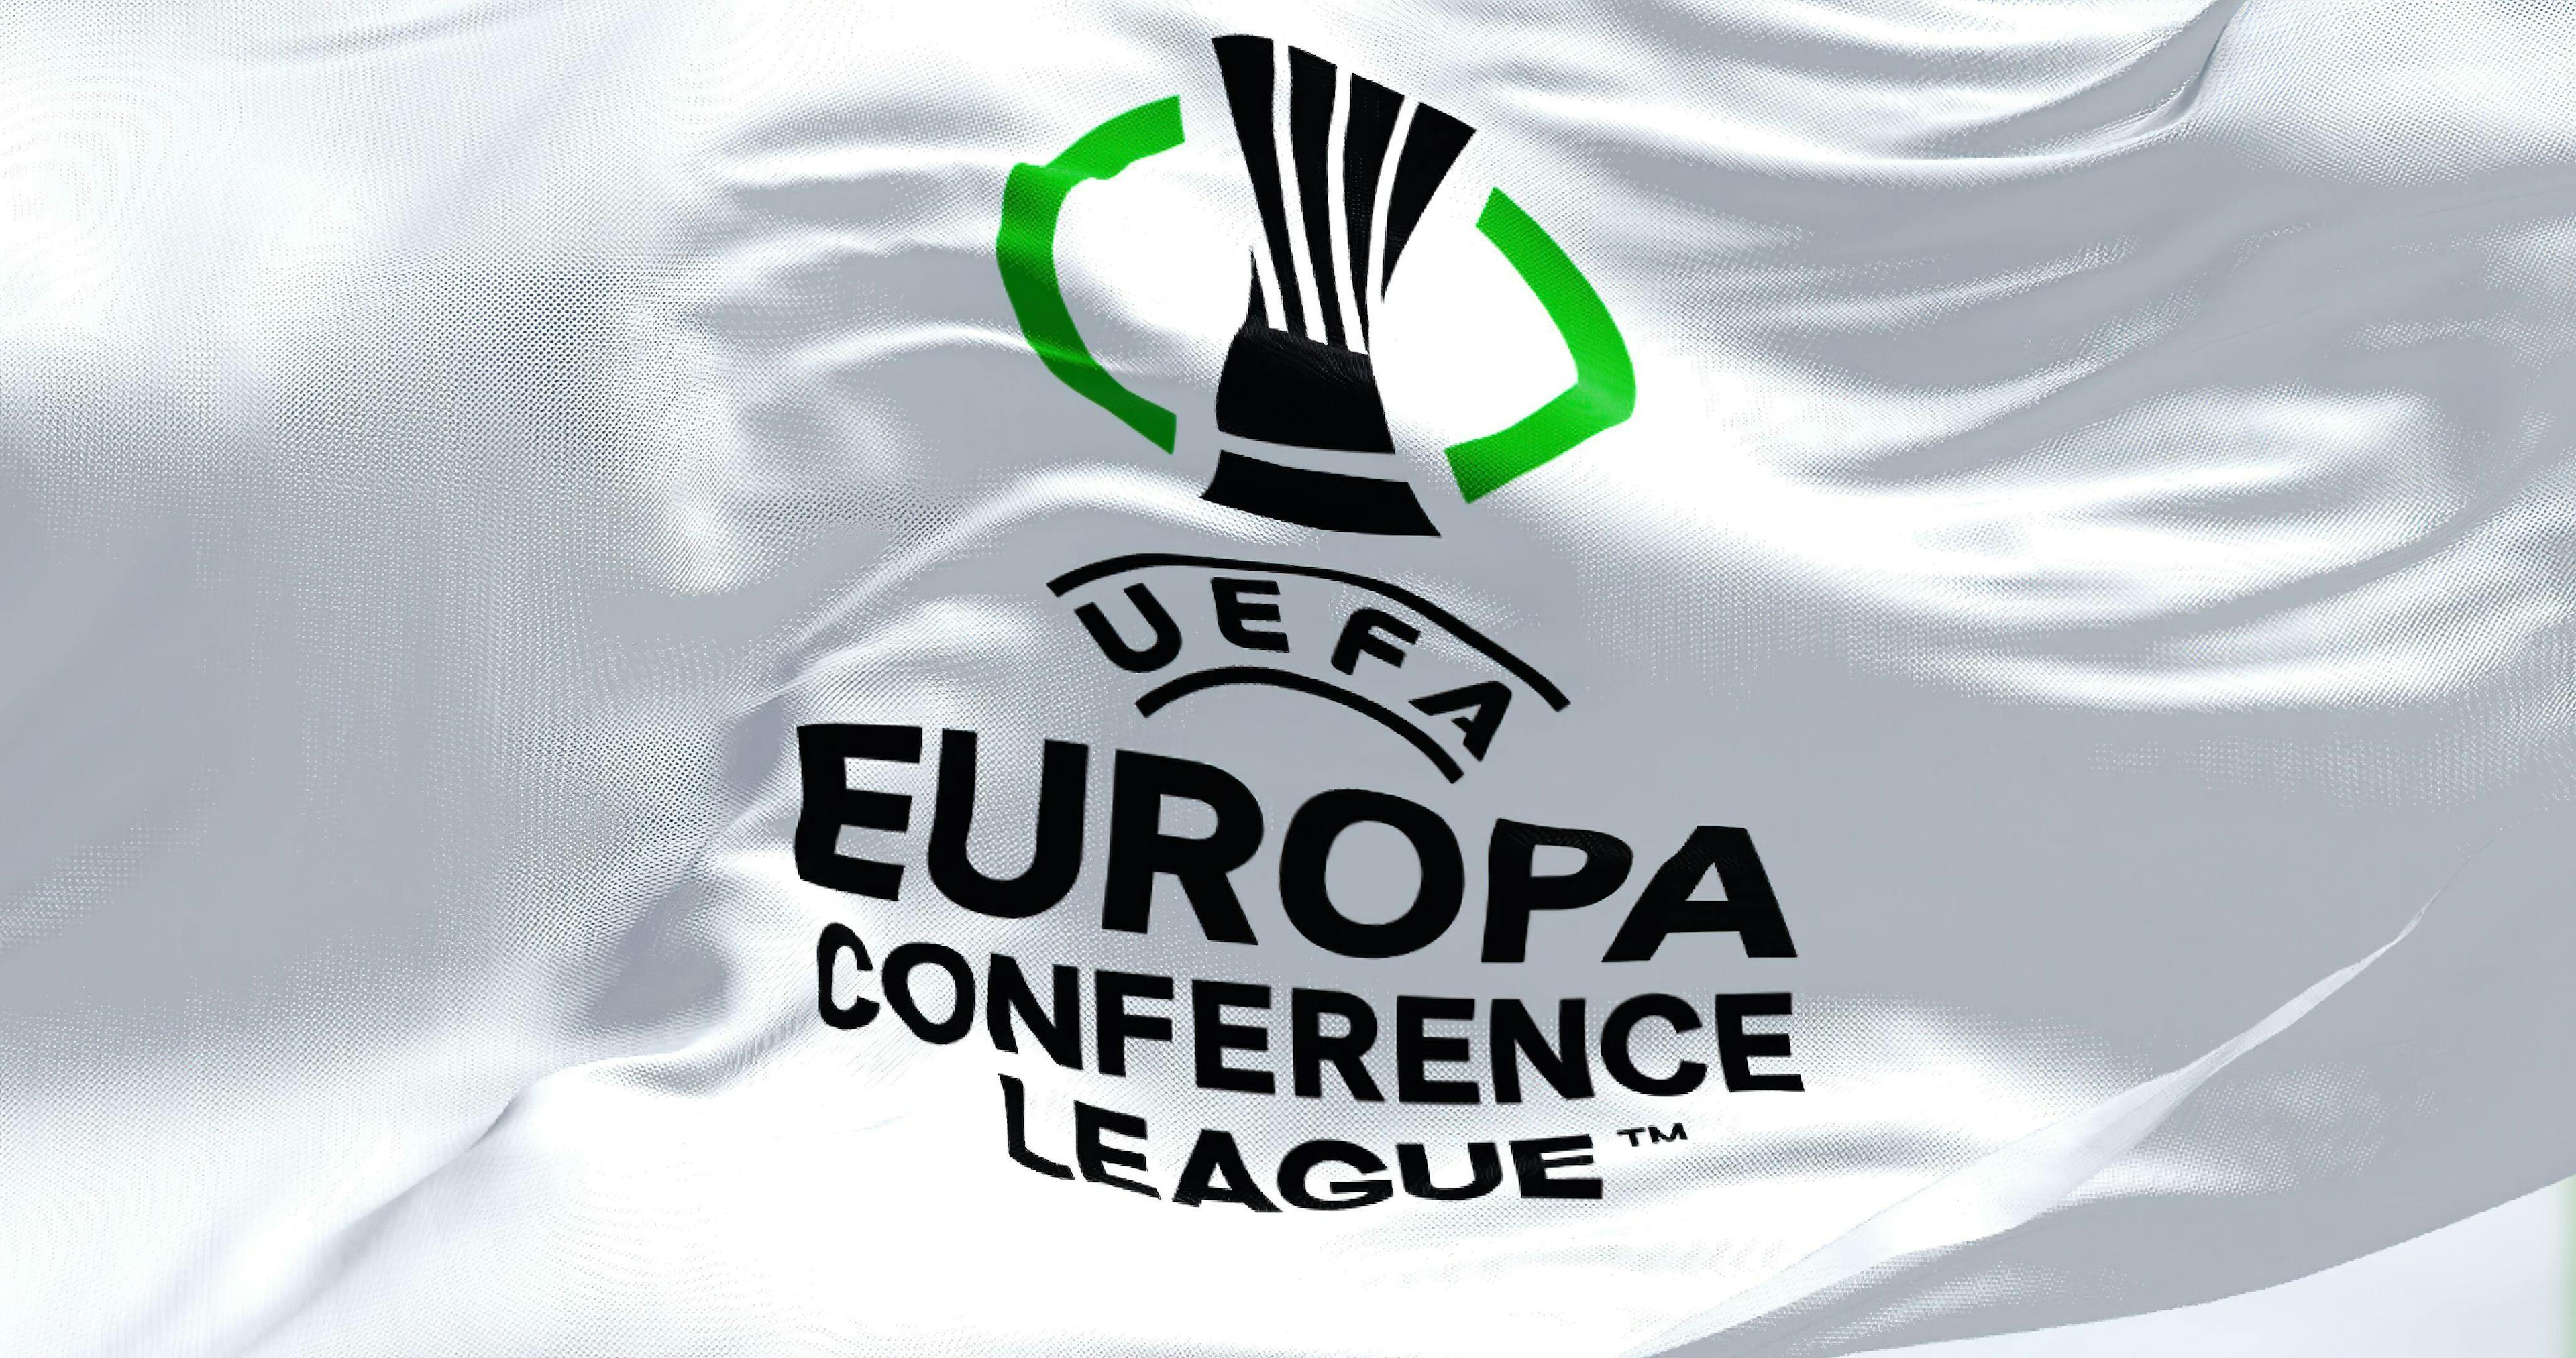 Fiorentina vs Ferencváros (05/10/2023) UEFA Europa Conference